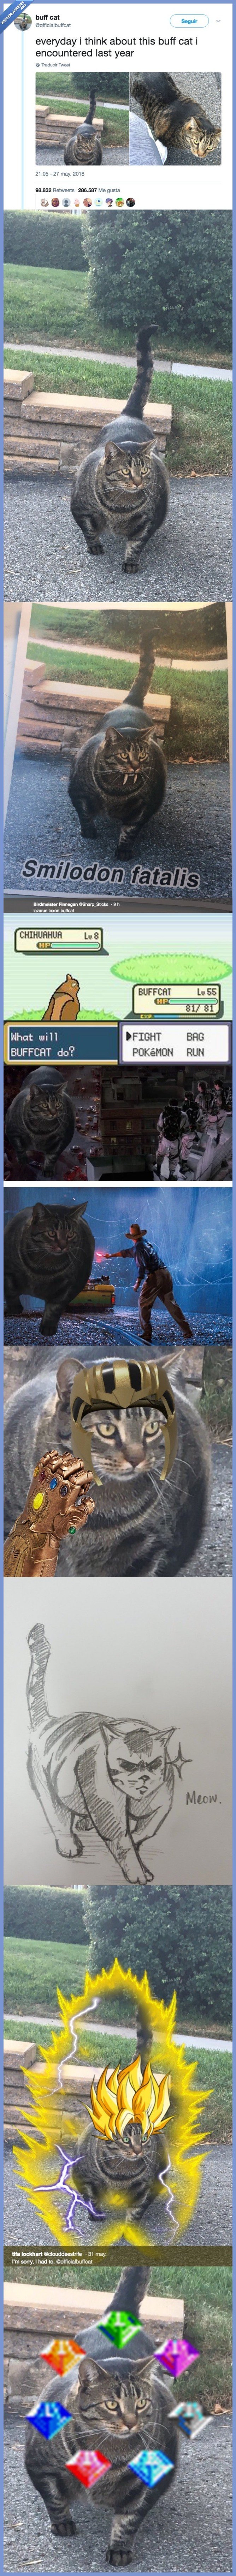 489171 - Conoce a Buff Cat, el gato musuculado que se ha convertido en la nueva sensación de internet y fuente de memes inagotables